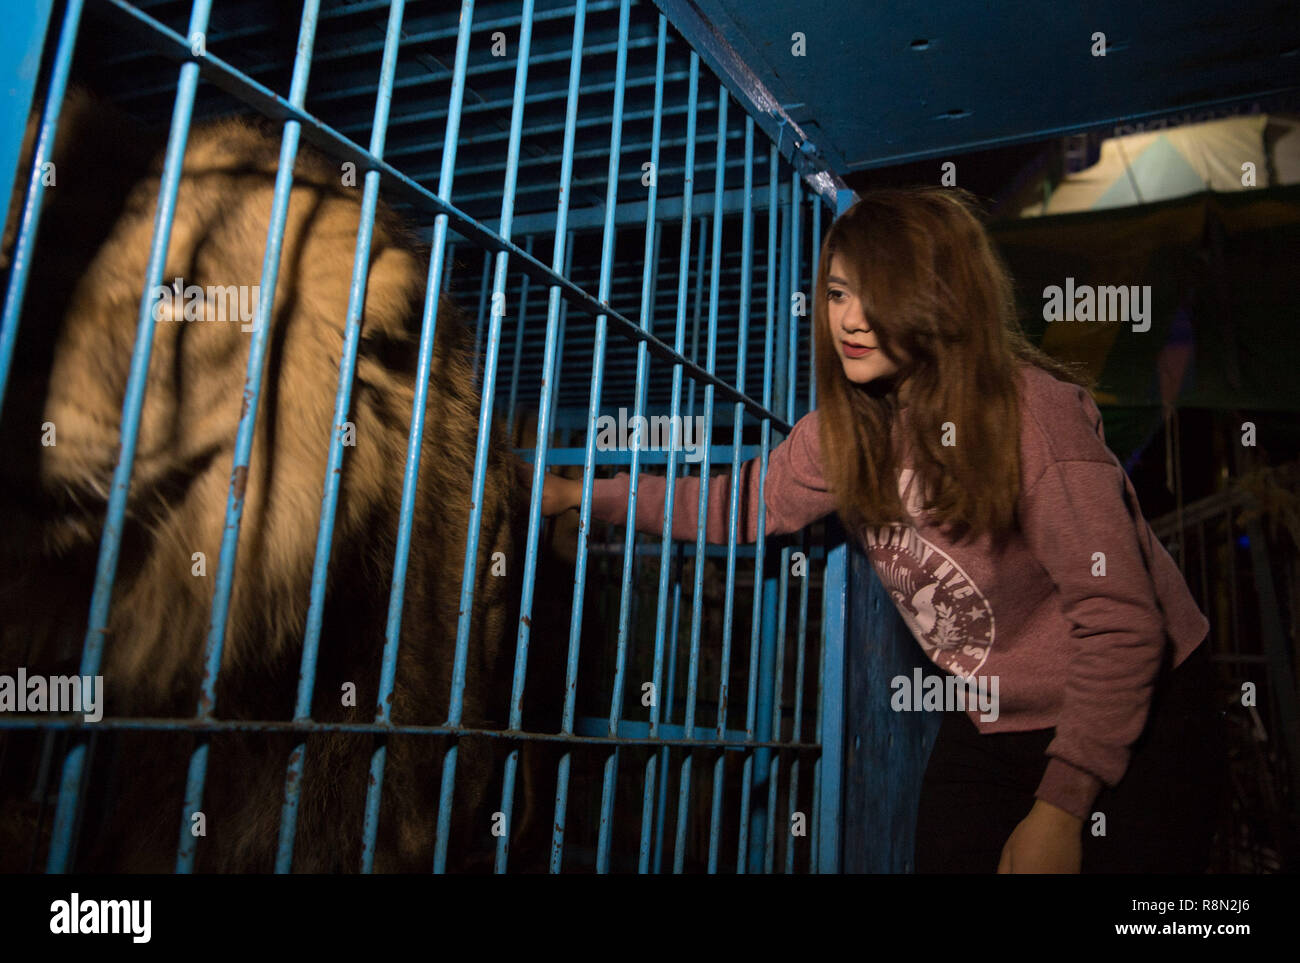 Kairo, Ägypten. 13 Dez, 2018. Löwenbändiger Sheroq Ismail berührt ein Löwe in Kairo, Ägypten, am Dez. 13, 2018. Sheroq Ismail, ein 15-Jähriger ägyptischer Löwenbändiger, eroberte die Herzen der Zuschauer um den eingesperrten Circus ring in eine wunderbare Nacht zeigen. Sie war in einer Familie geboren, berühmt für die Zähmung der Lions. Ihr Großvater war ein renommierter lion Zirkus tamer Star in Ägypten im 19. Jahrhundert. Ihre Mutter, Vater und Onkel sind auch in Löwen zähmen gemeistert. Ismail startete ihre erste Show als Dompteur im Alter von 12 Jahren. Credit: Wu Huiwo/Xinhua/Alamy leben Nachrichten Stockfoto